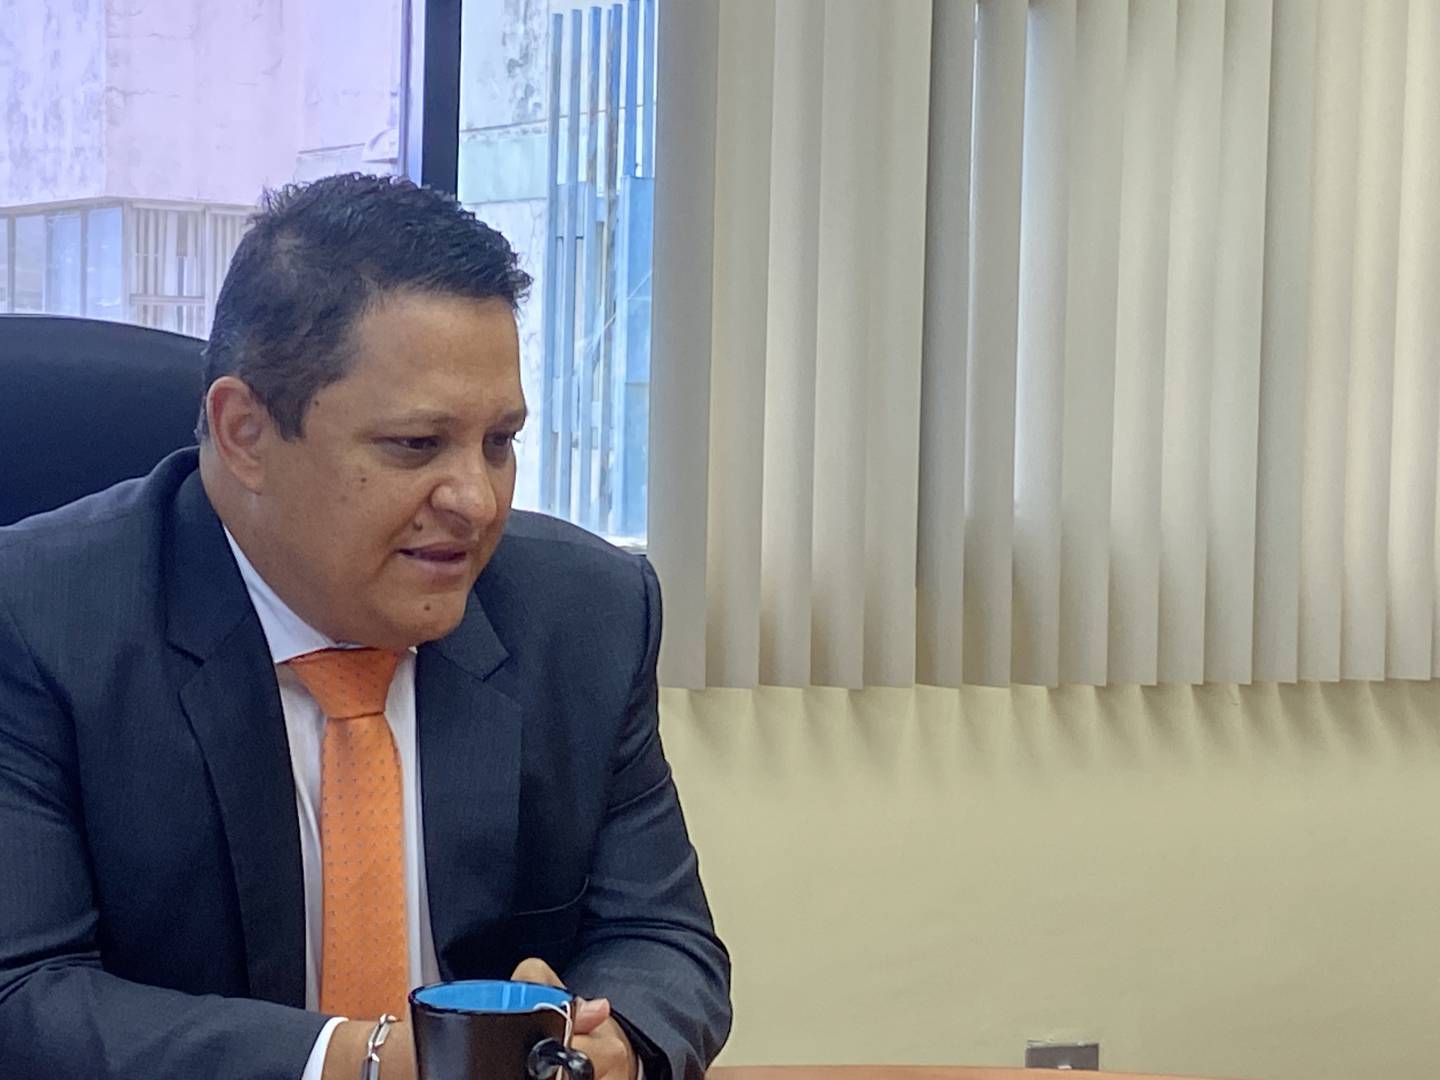 El gerente general de Racsa, Mauricio Barrantes, reconoció que el 2 de setiembre del 2022 sostuvo una reunión con "representantes de la Uccaep". Foto: Natasha Cambronero